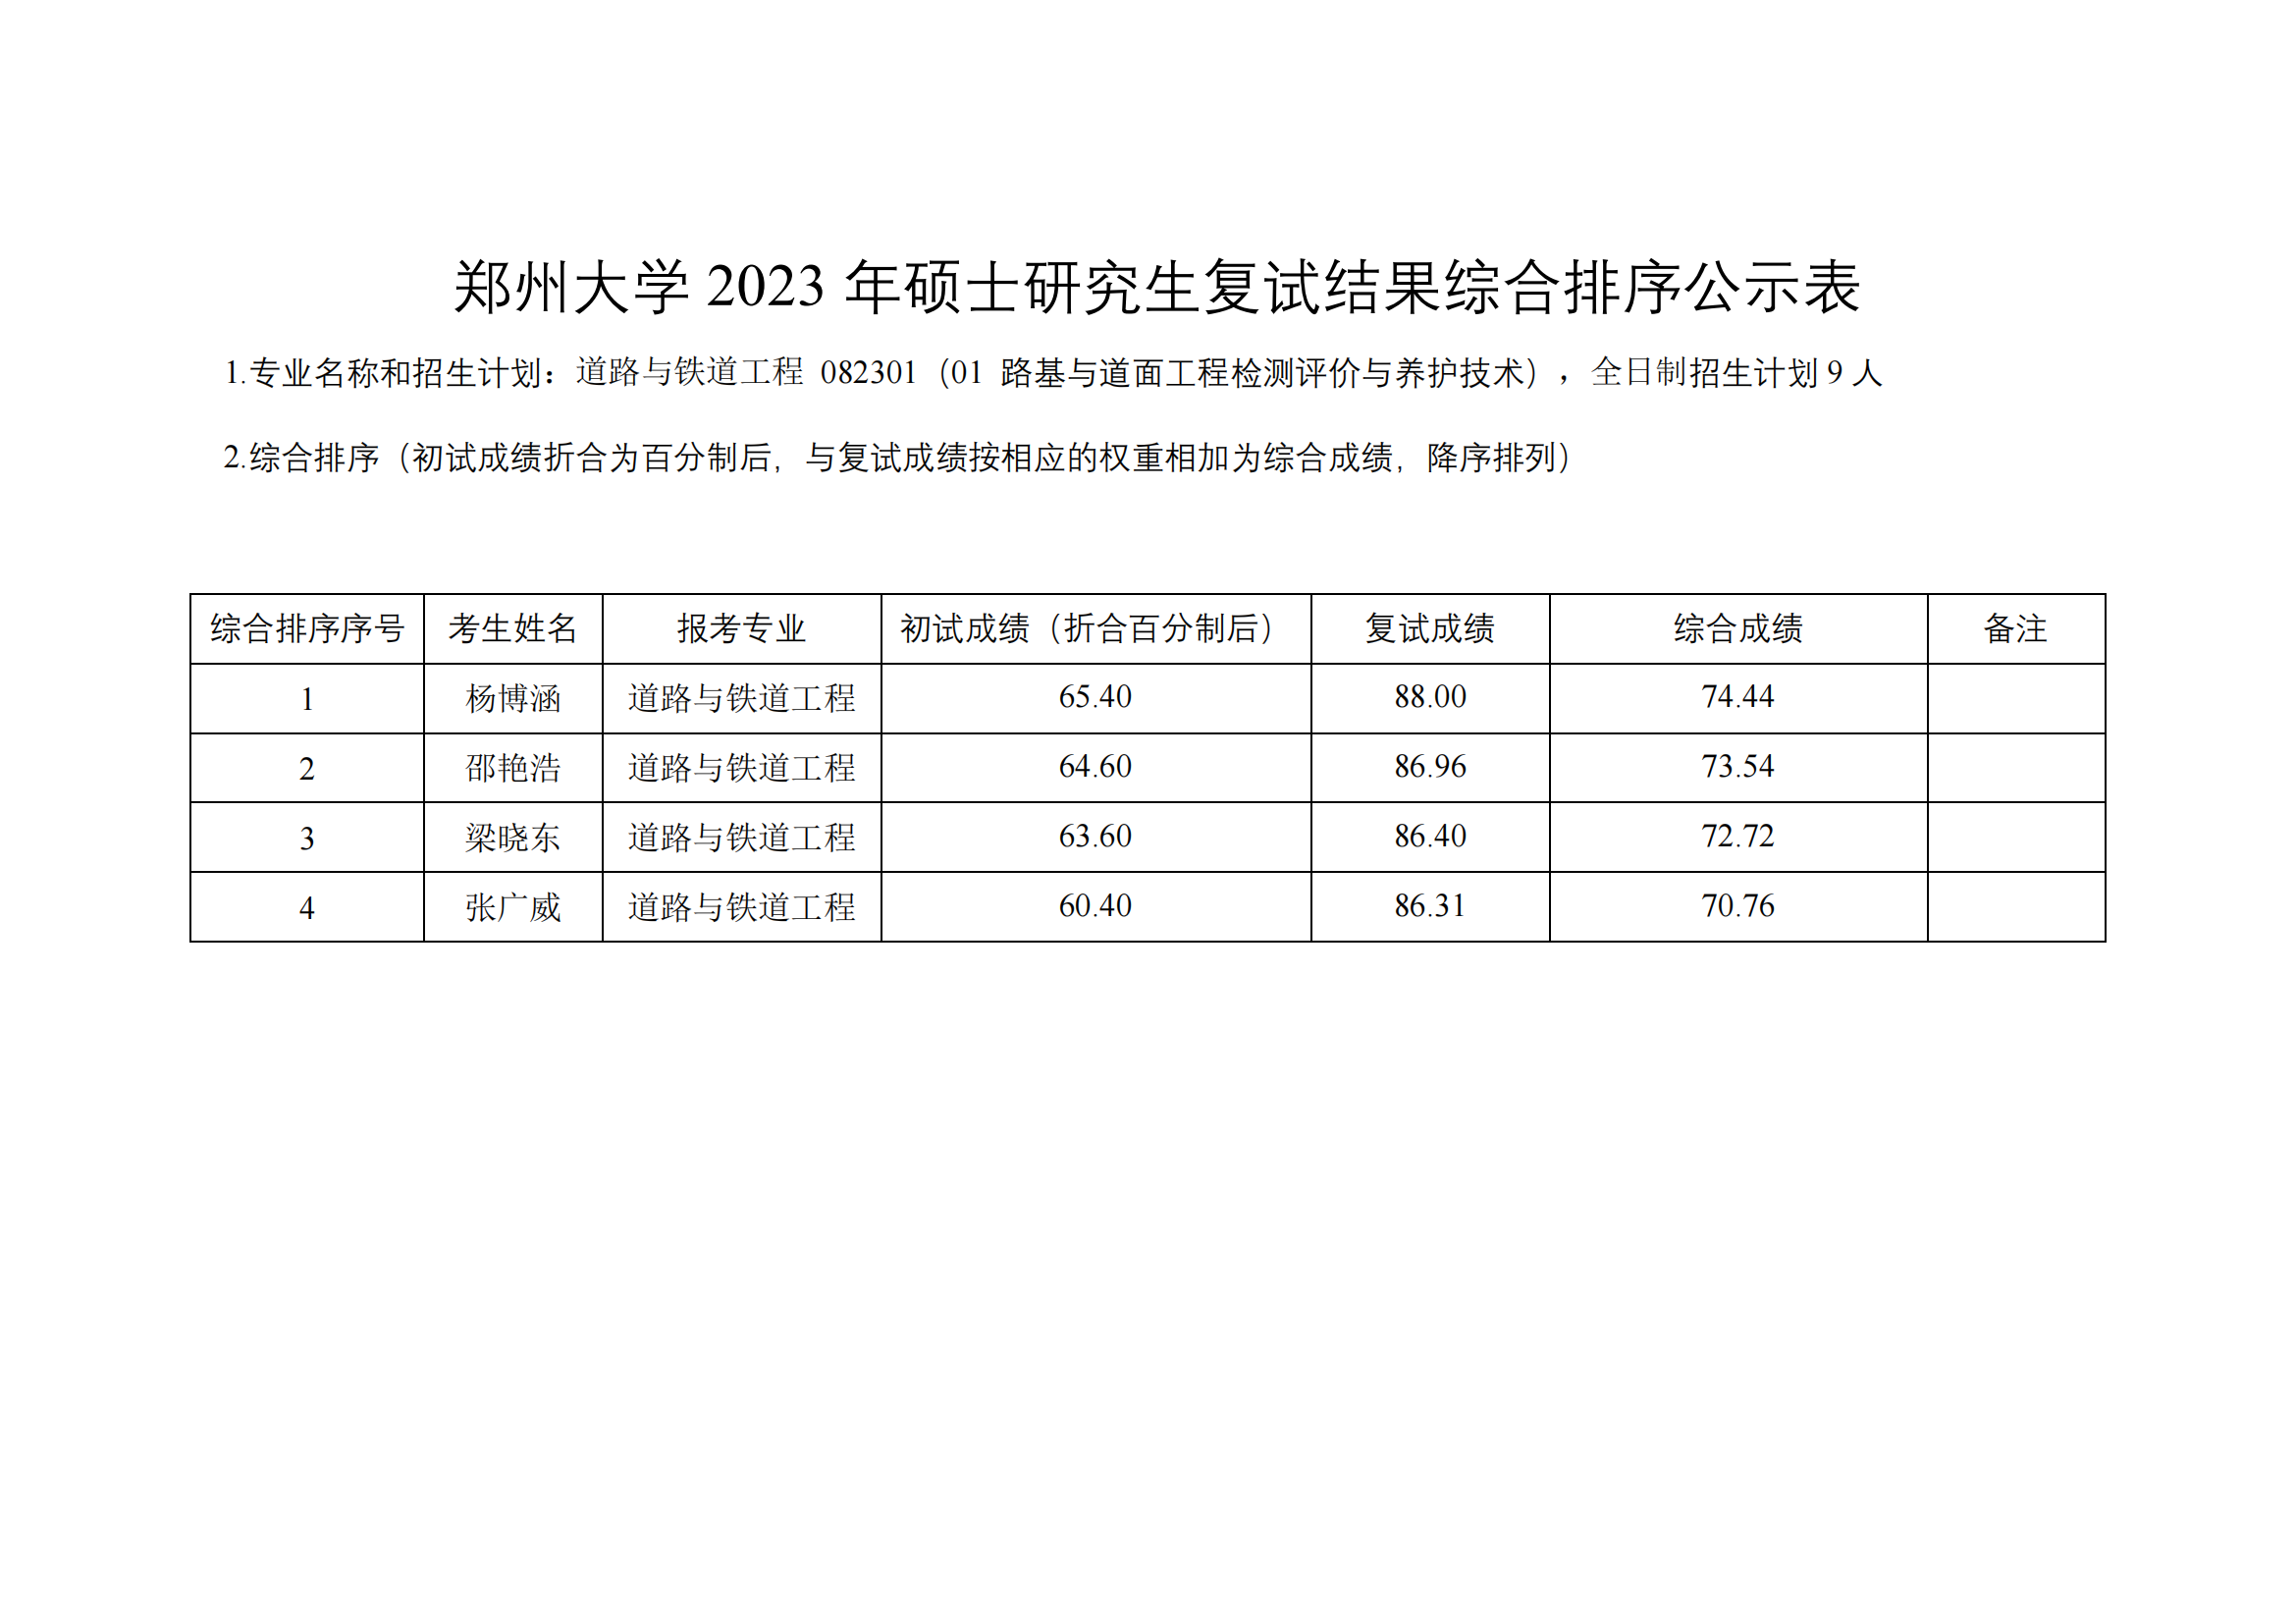 郑州大学水利与土木工程学院（原水利科学与工程学院专业方向）－2023年一志愿硕士研究生复试结果综合排序公示表-20230402(2)_07.png